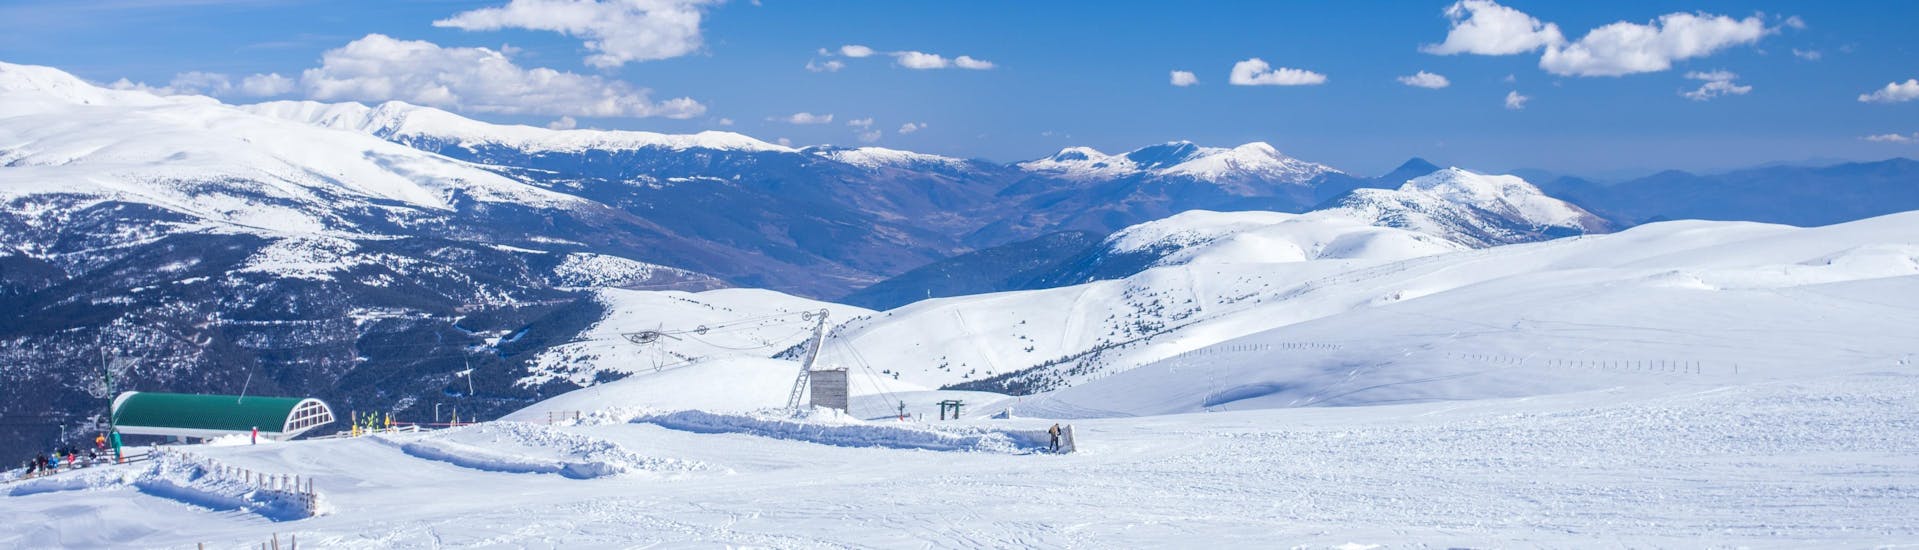 Un'immagine delle piste di La Molina dove è possibile sciare con le lezioni di sci.